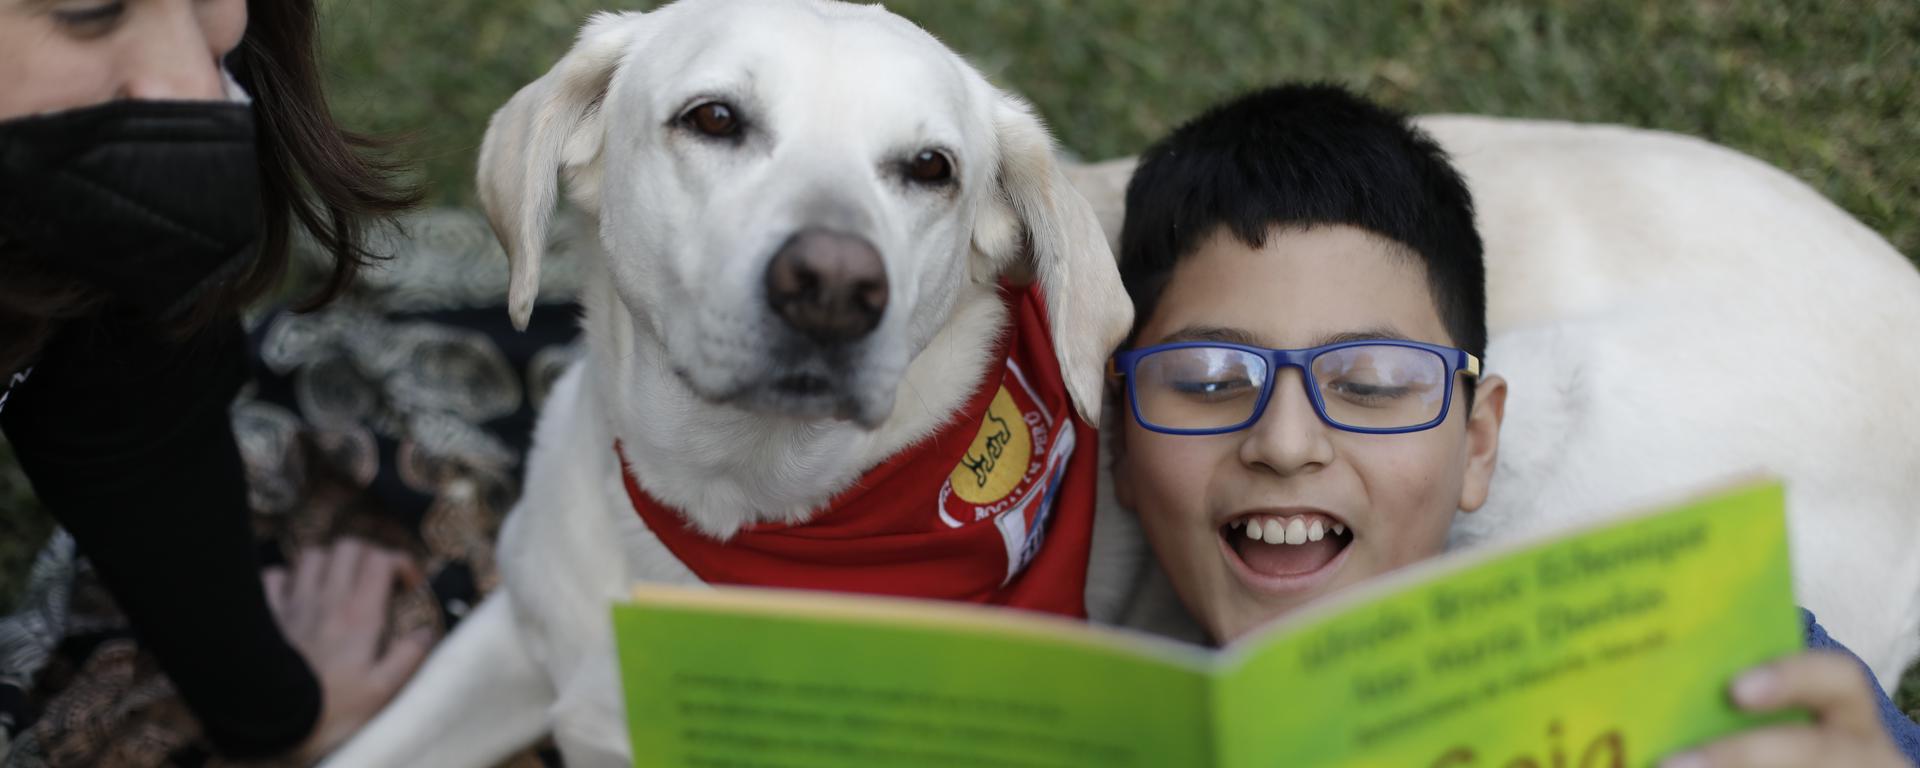 Día del Niño: Terapia equina y canina en Lima como alternativa para los pequeños 